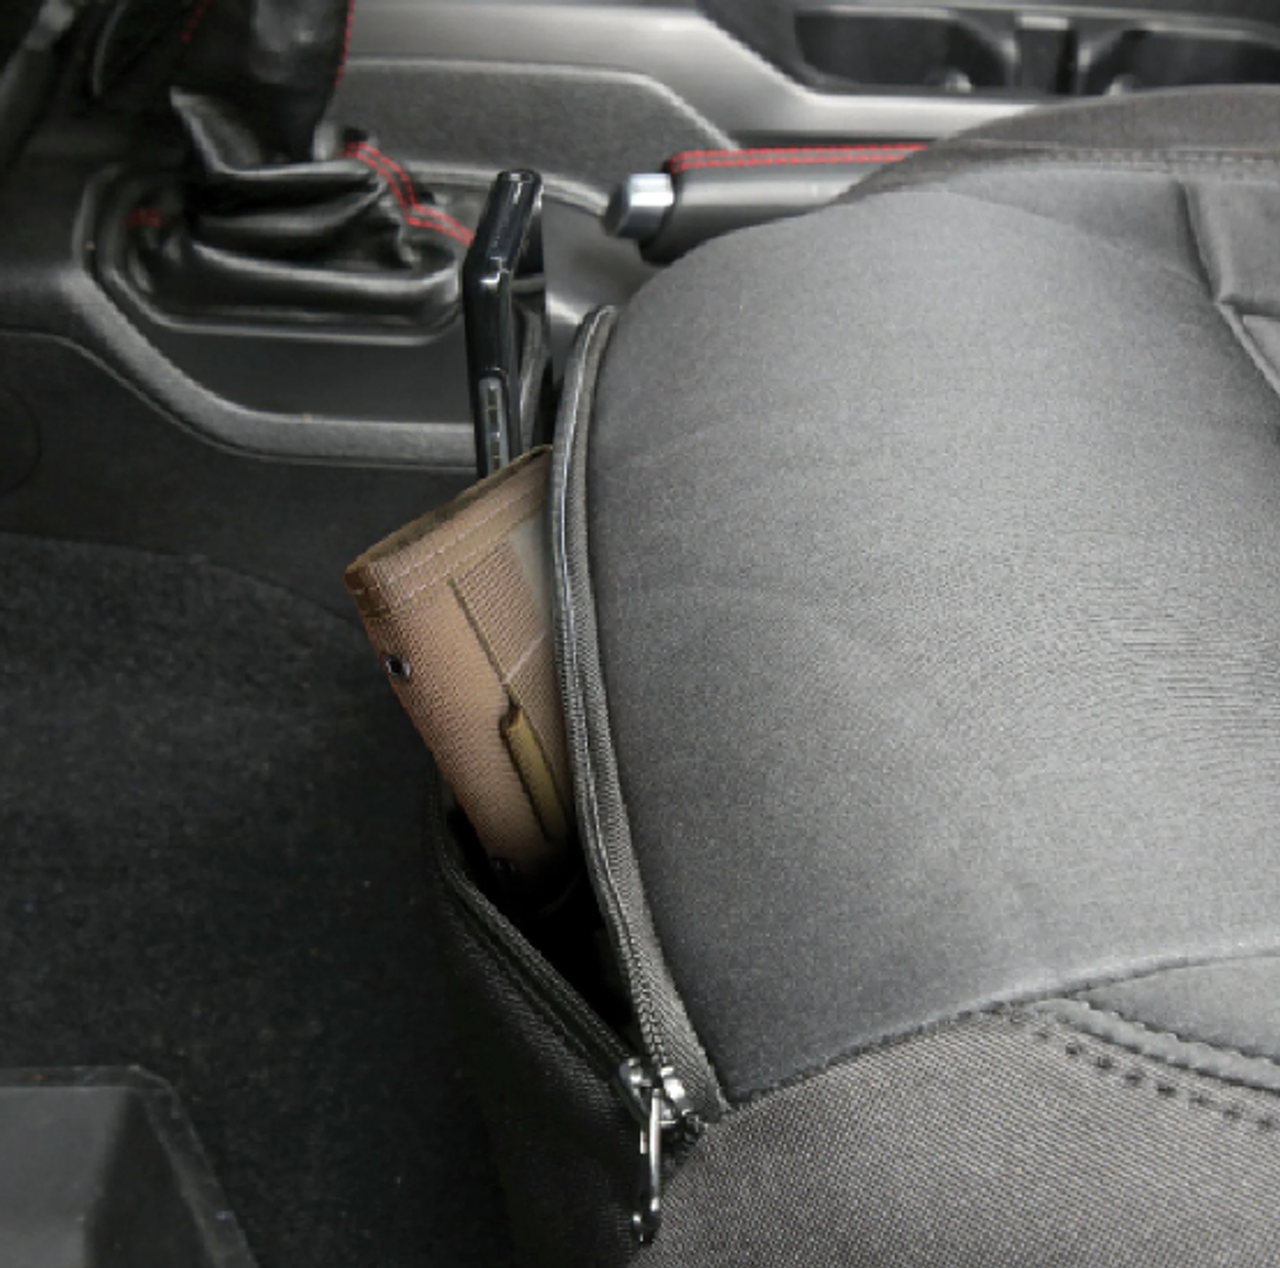 Smittybilt 577122 Gen2 Neoprene Seat Cover Set in Charcoal/Black for Jeep Wrangler JL 4 Door 2018+